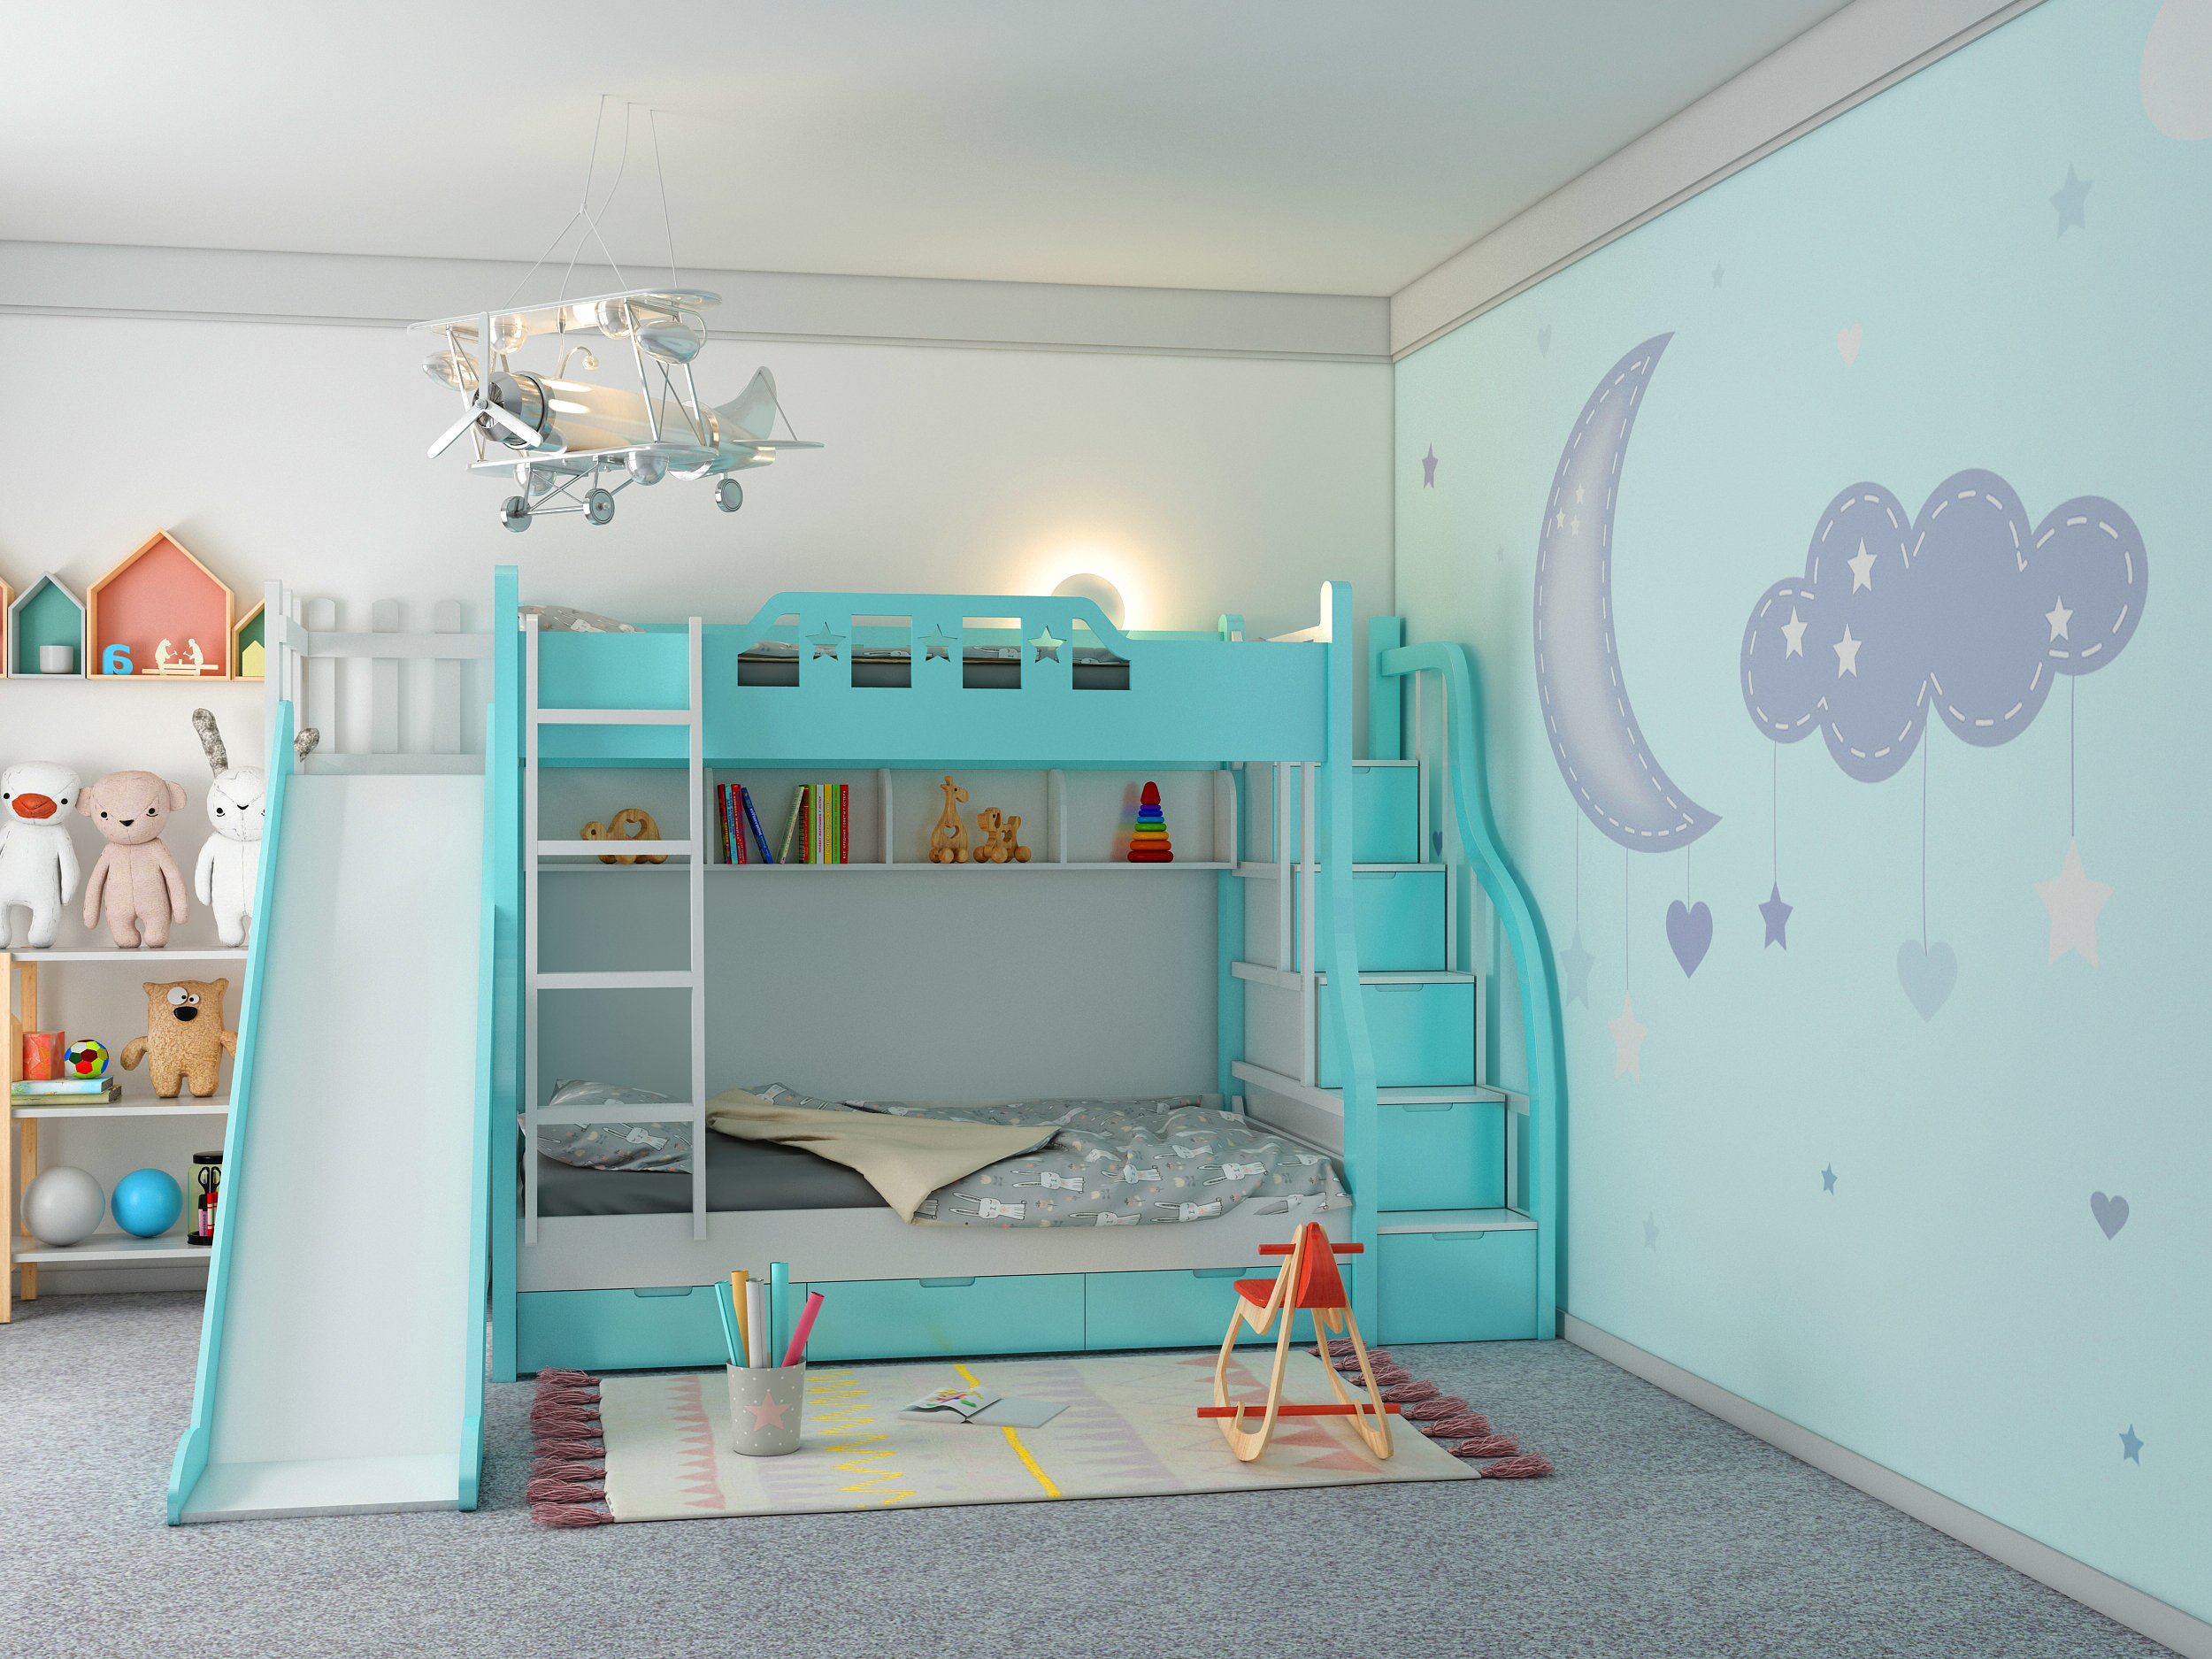 Giường tầng trẻ em giá rẻ Hải Phòng